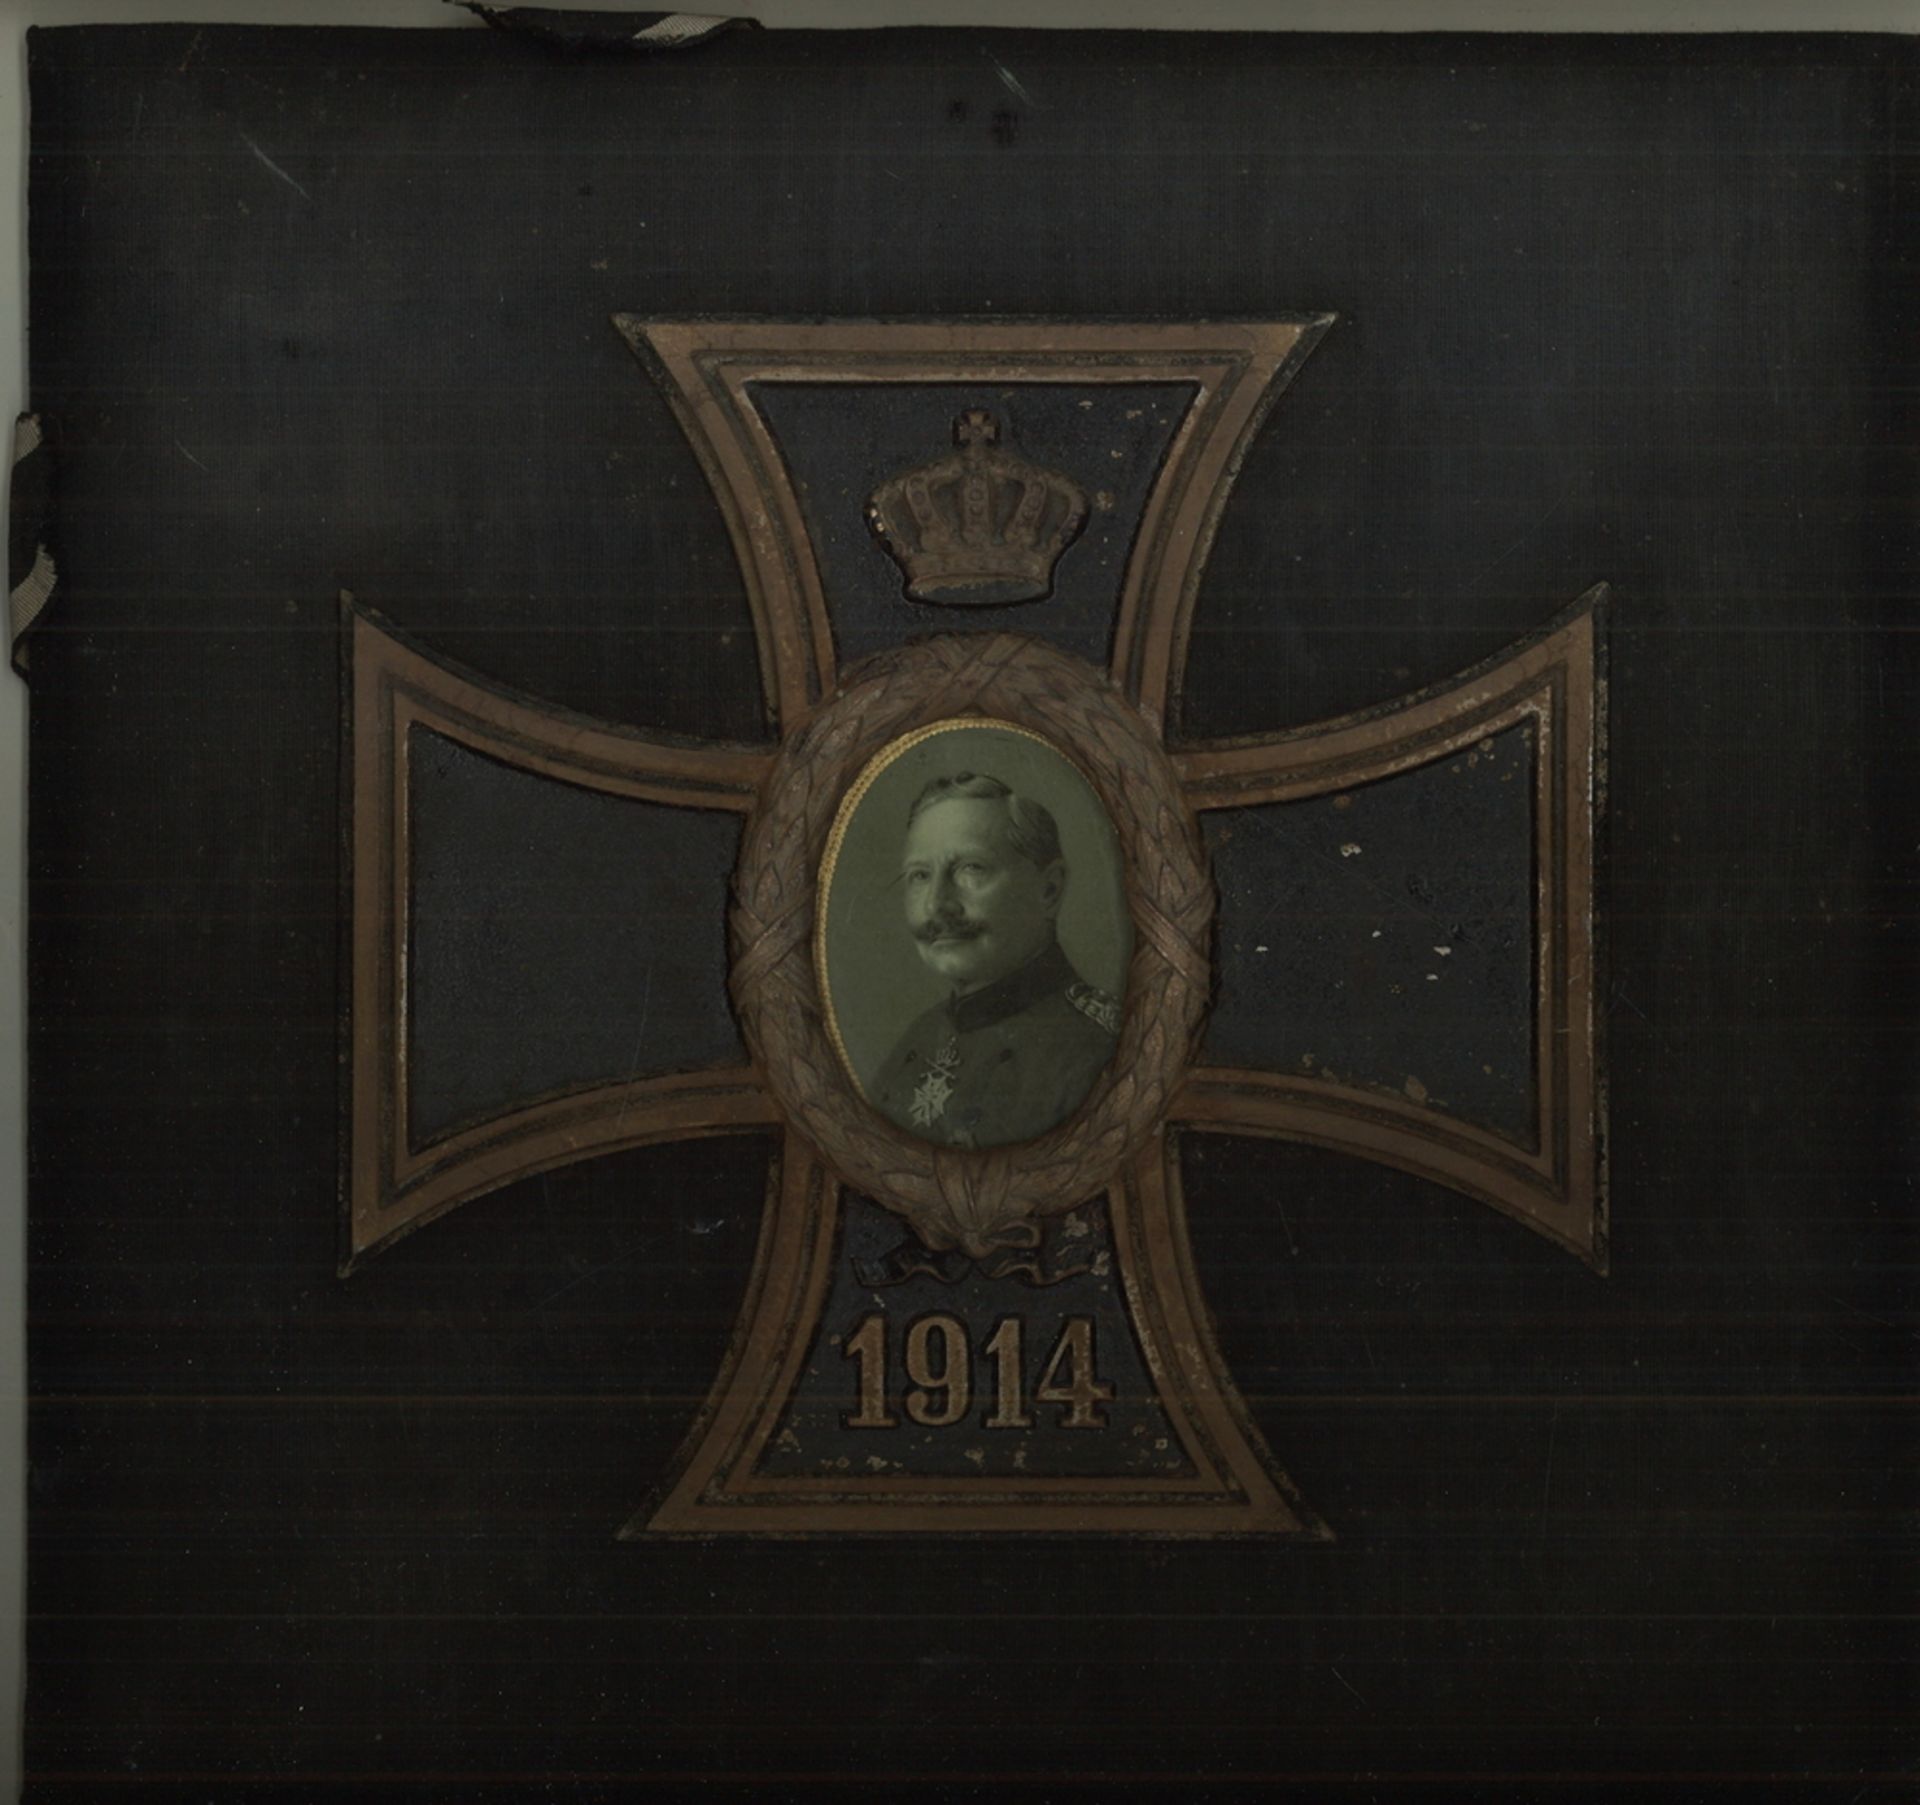 großes Eisernes Kreuz 1914 mit Soldaten Portrait und Krone als Bild. Maße: Höhe ca. 29 cm, Breite